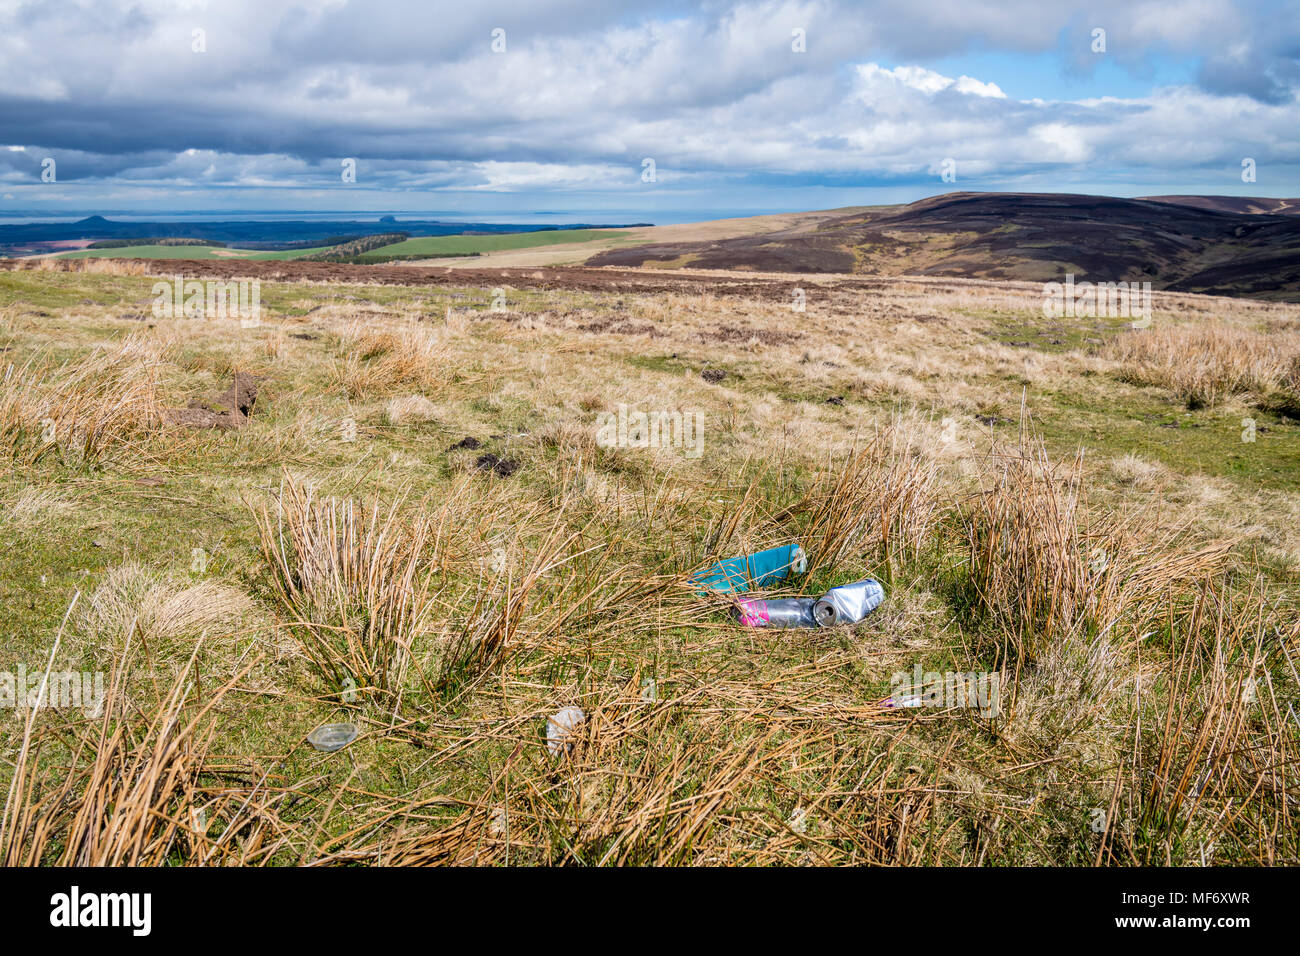 Rubbish dumped in a beauty spot, Scottish Borders, Scotland Stock Photo